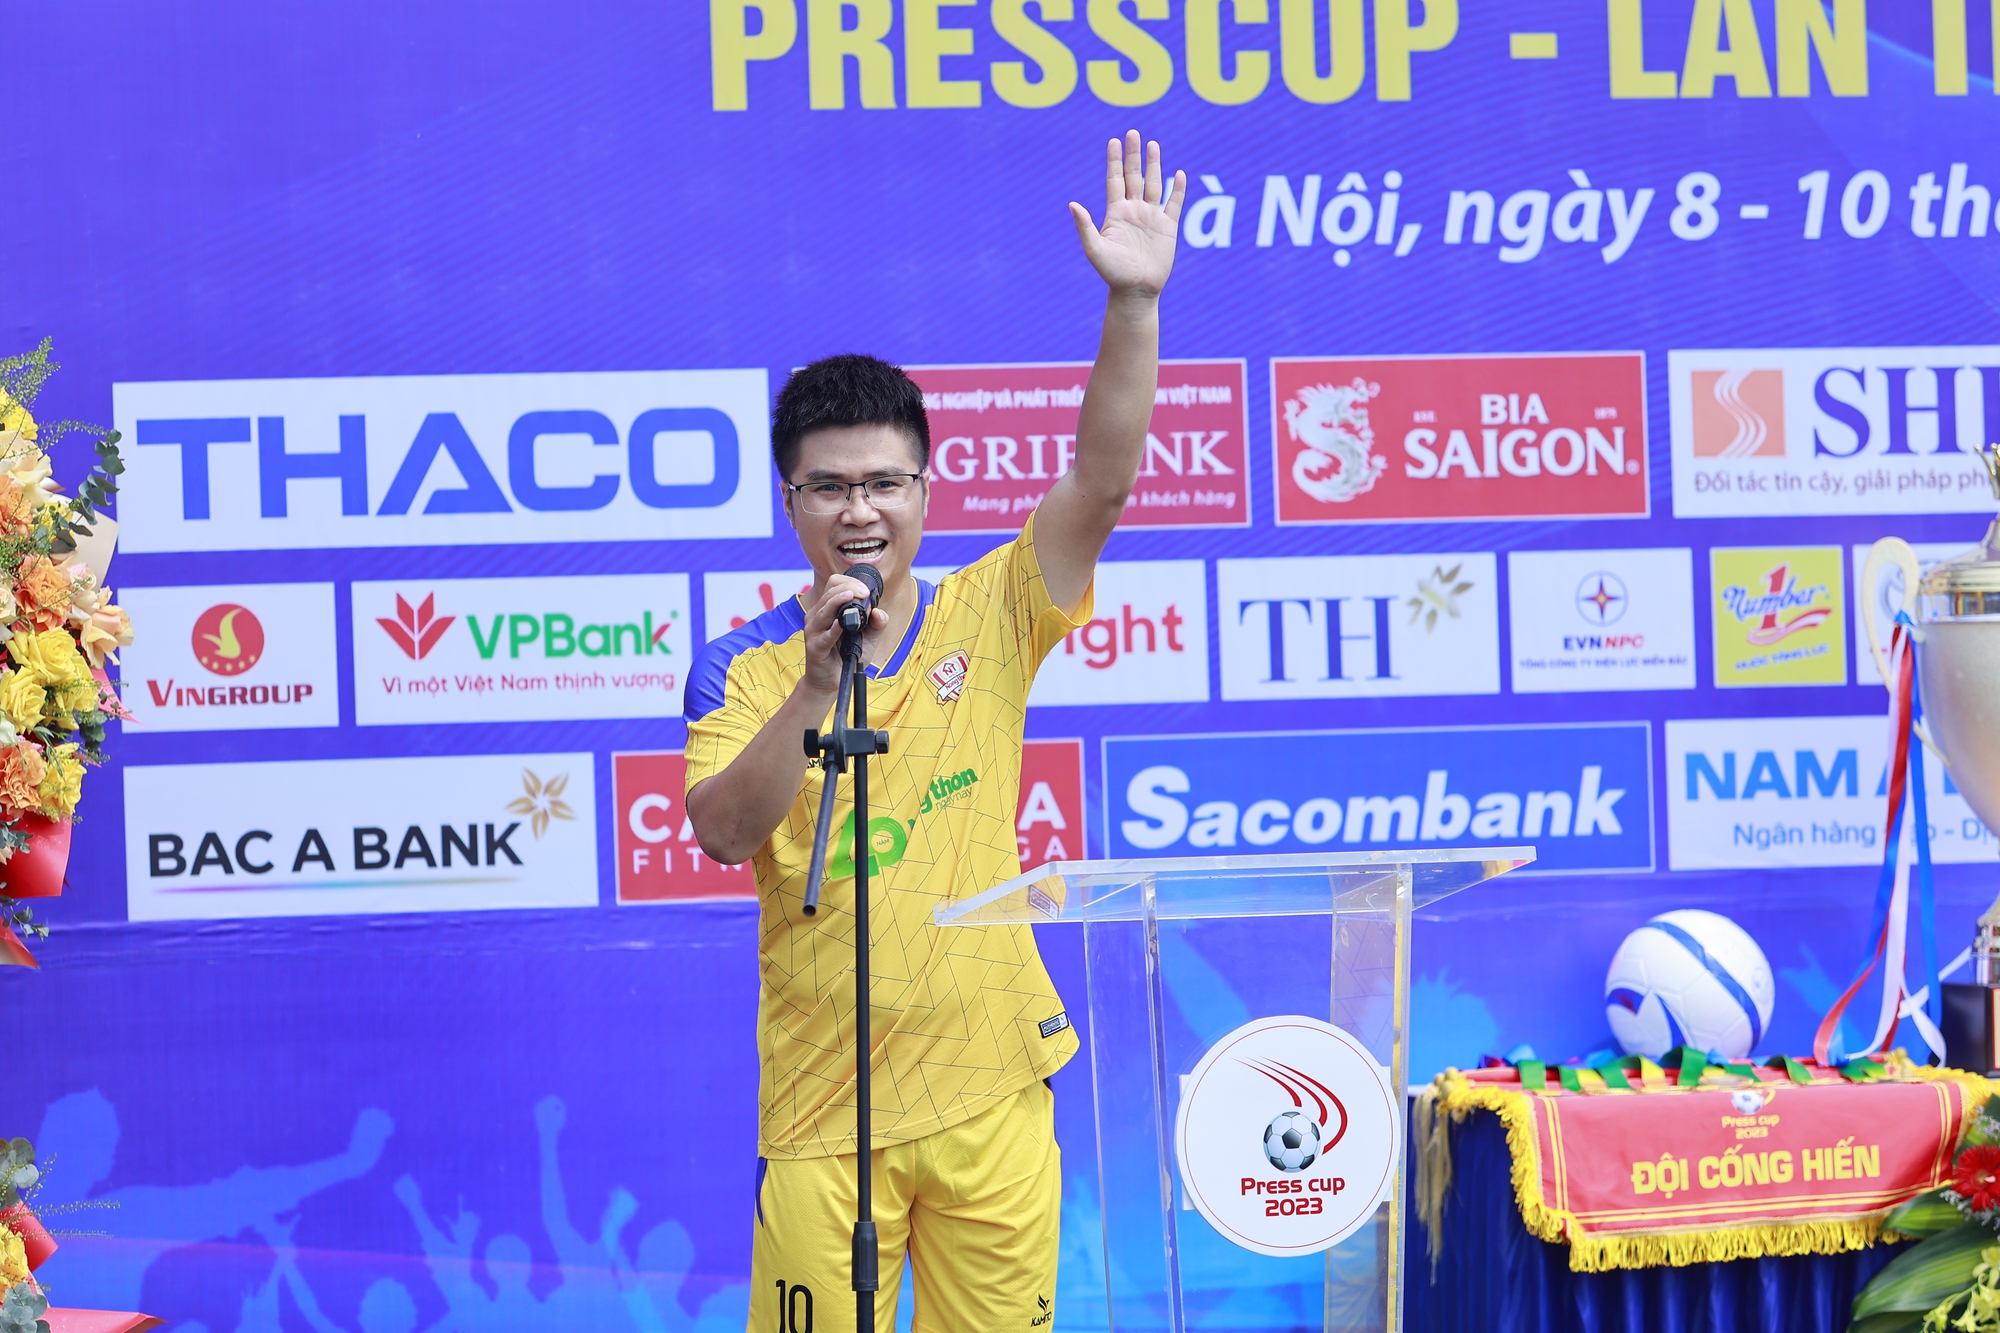 Khai mạc Vòng chung kết Press Cup 2023: báo NTNN/Dân Việt để hòa trận đầu ra quân - Ảnh 11.